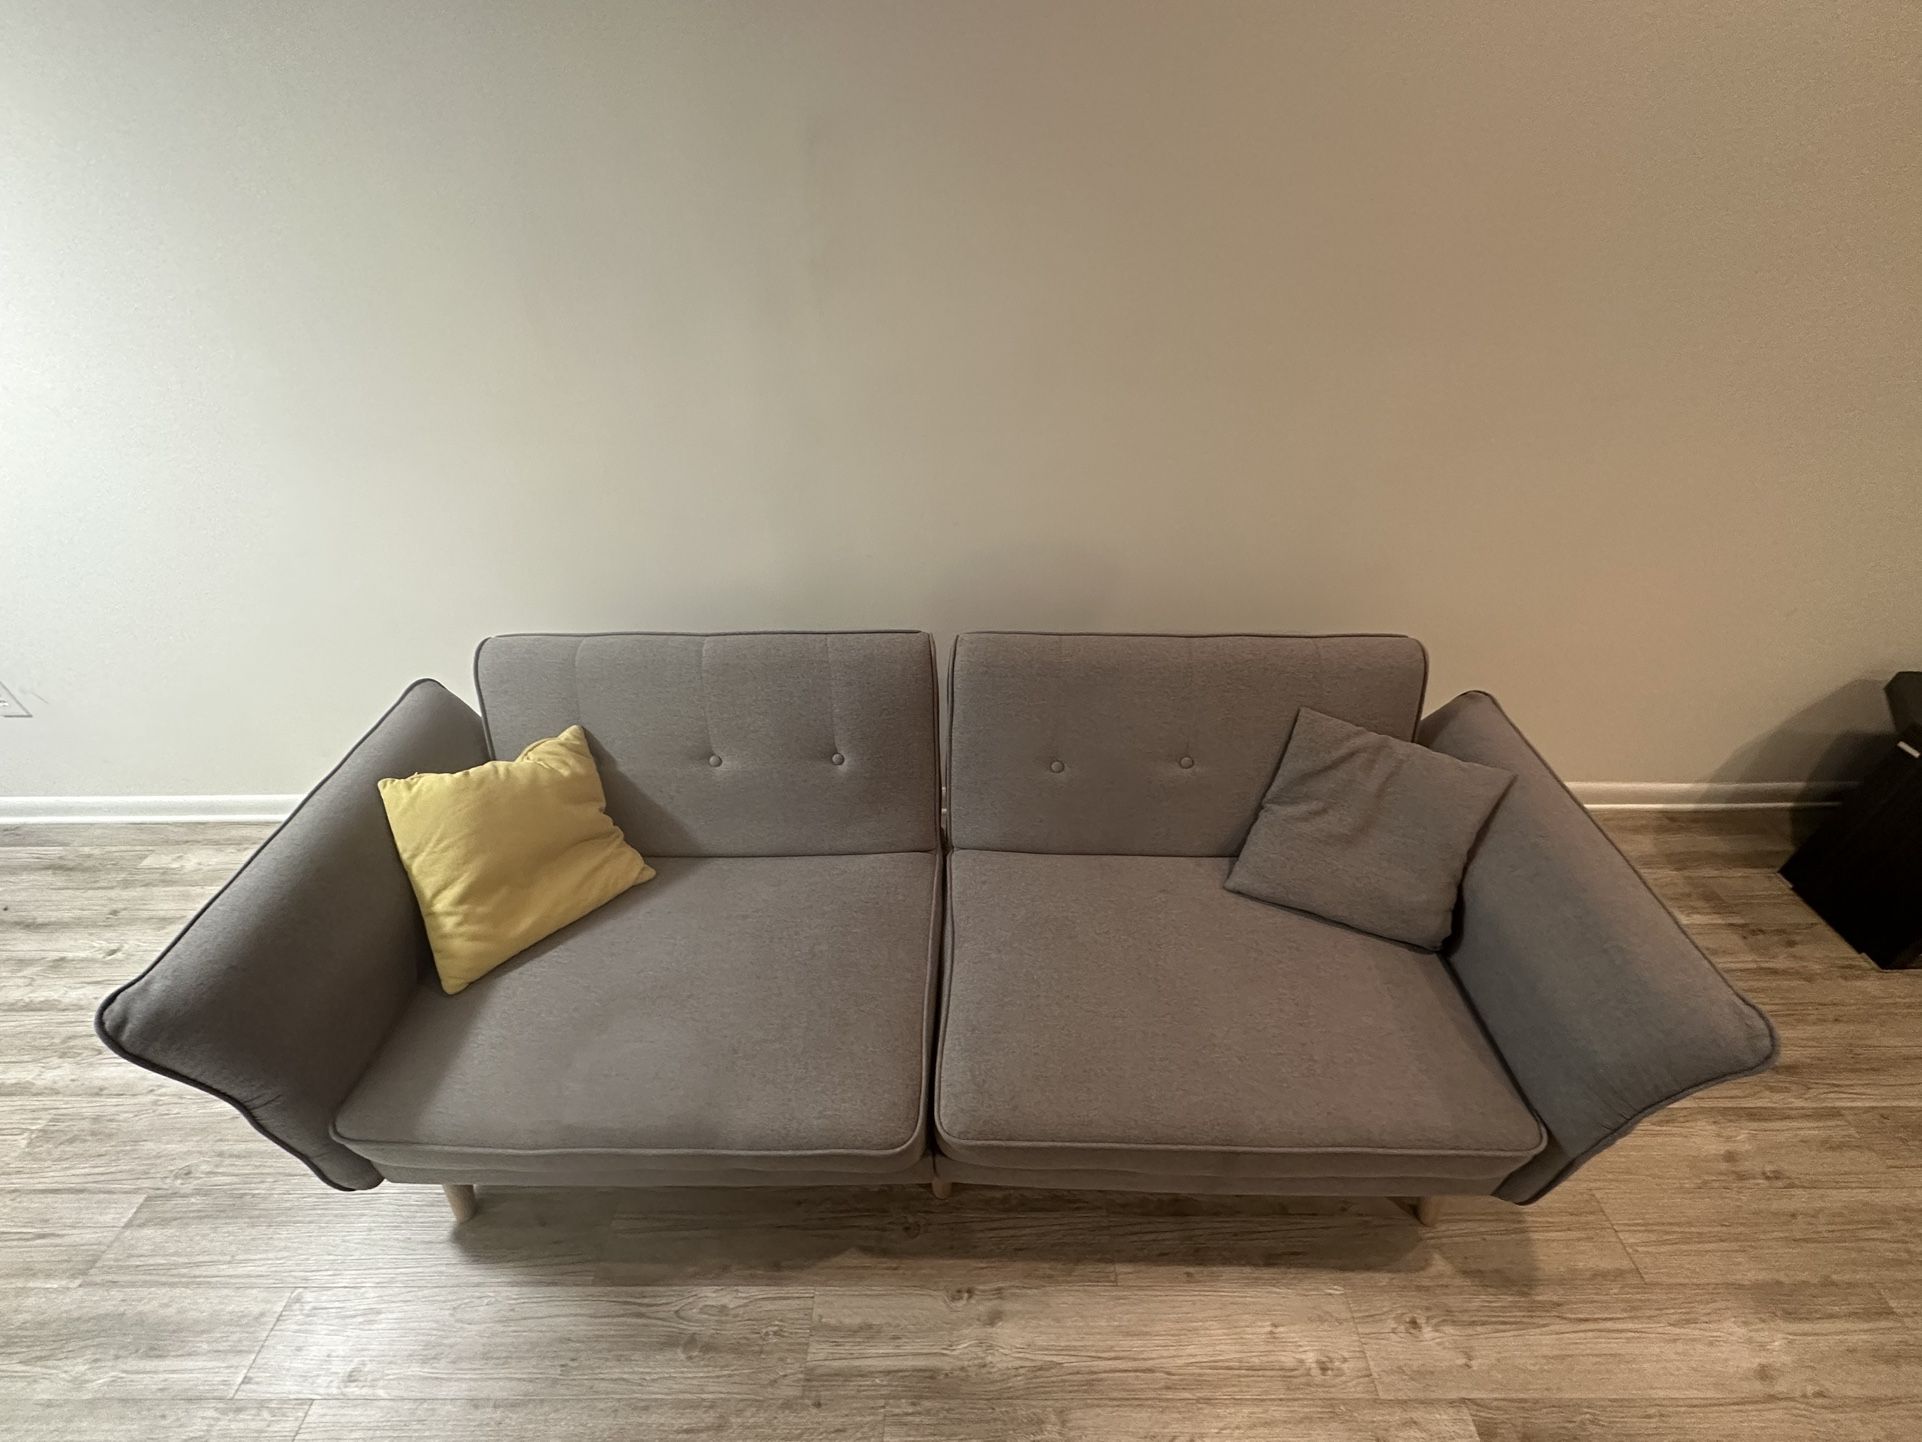 84” Sofa Bed (Futon)